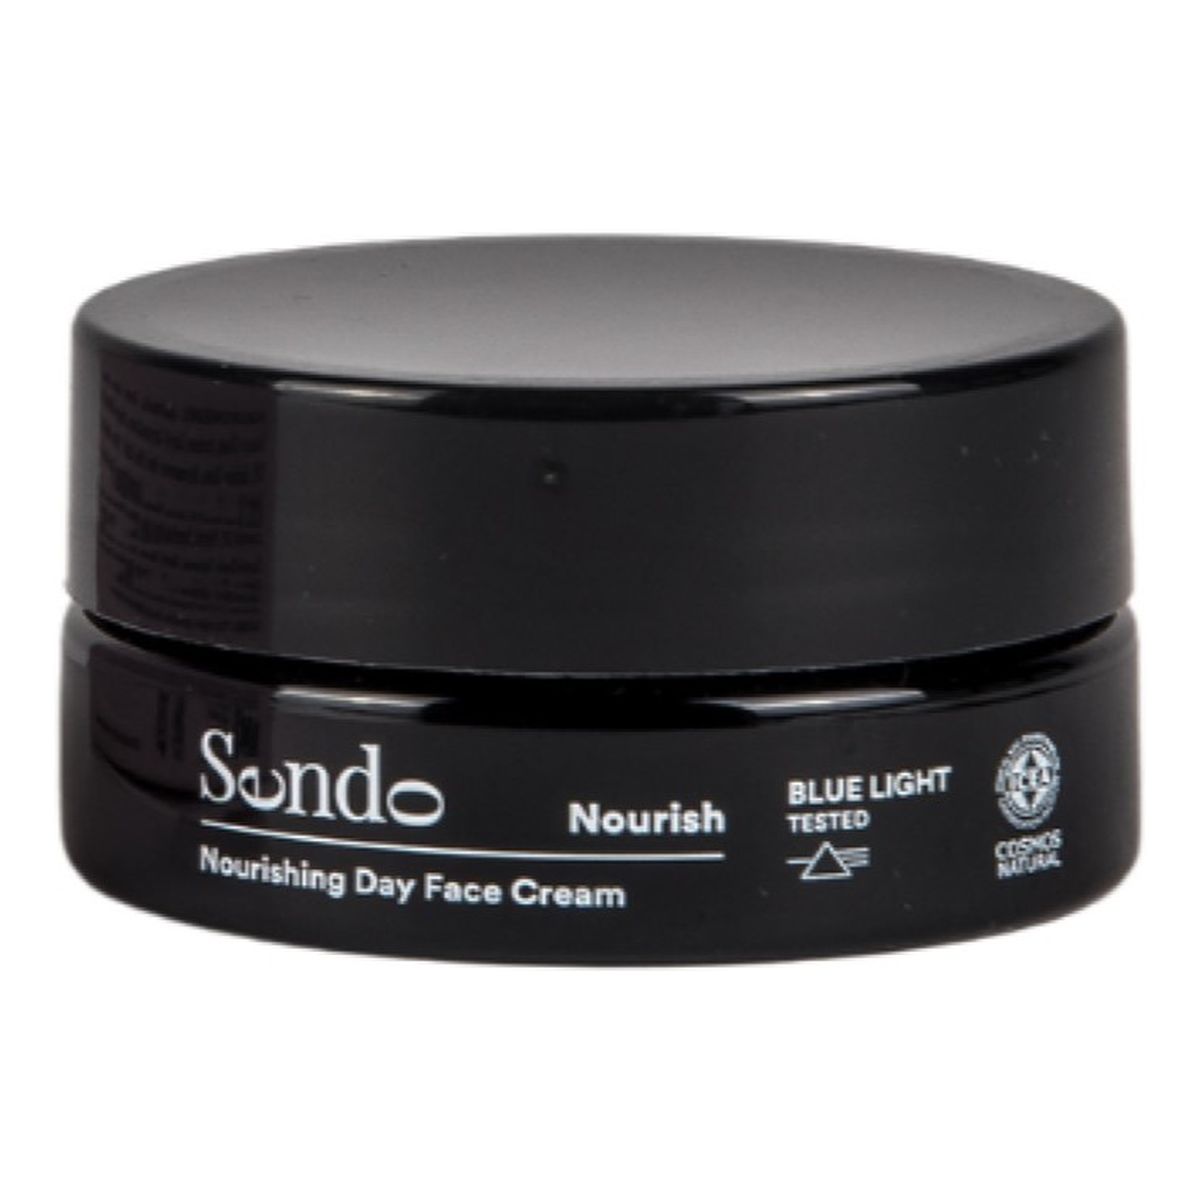 Sendo Nourishing Day Face Cream odżywczy Krem do twarzy na dzień 50ml